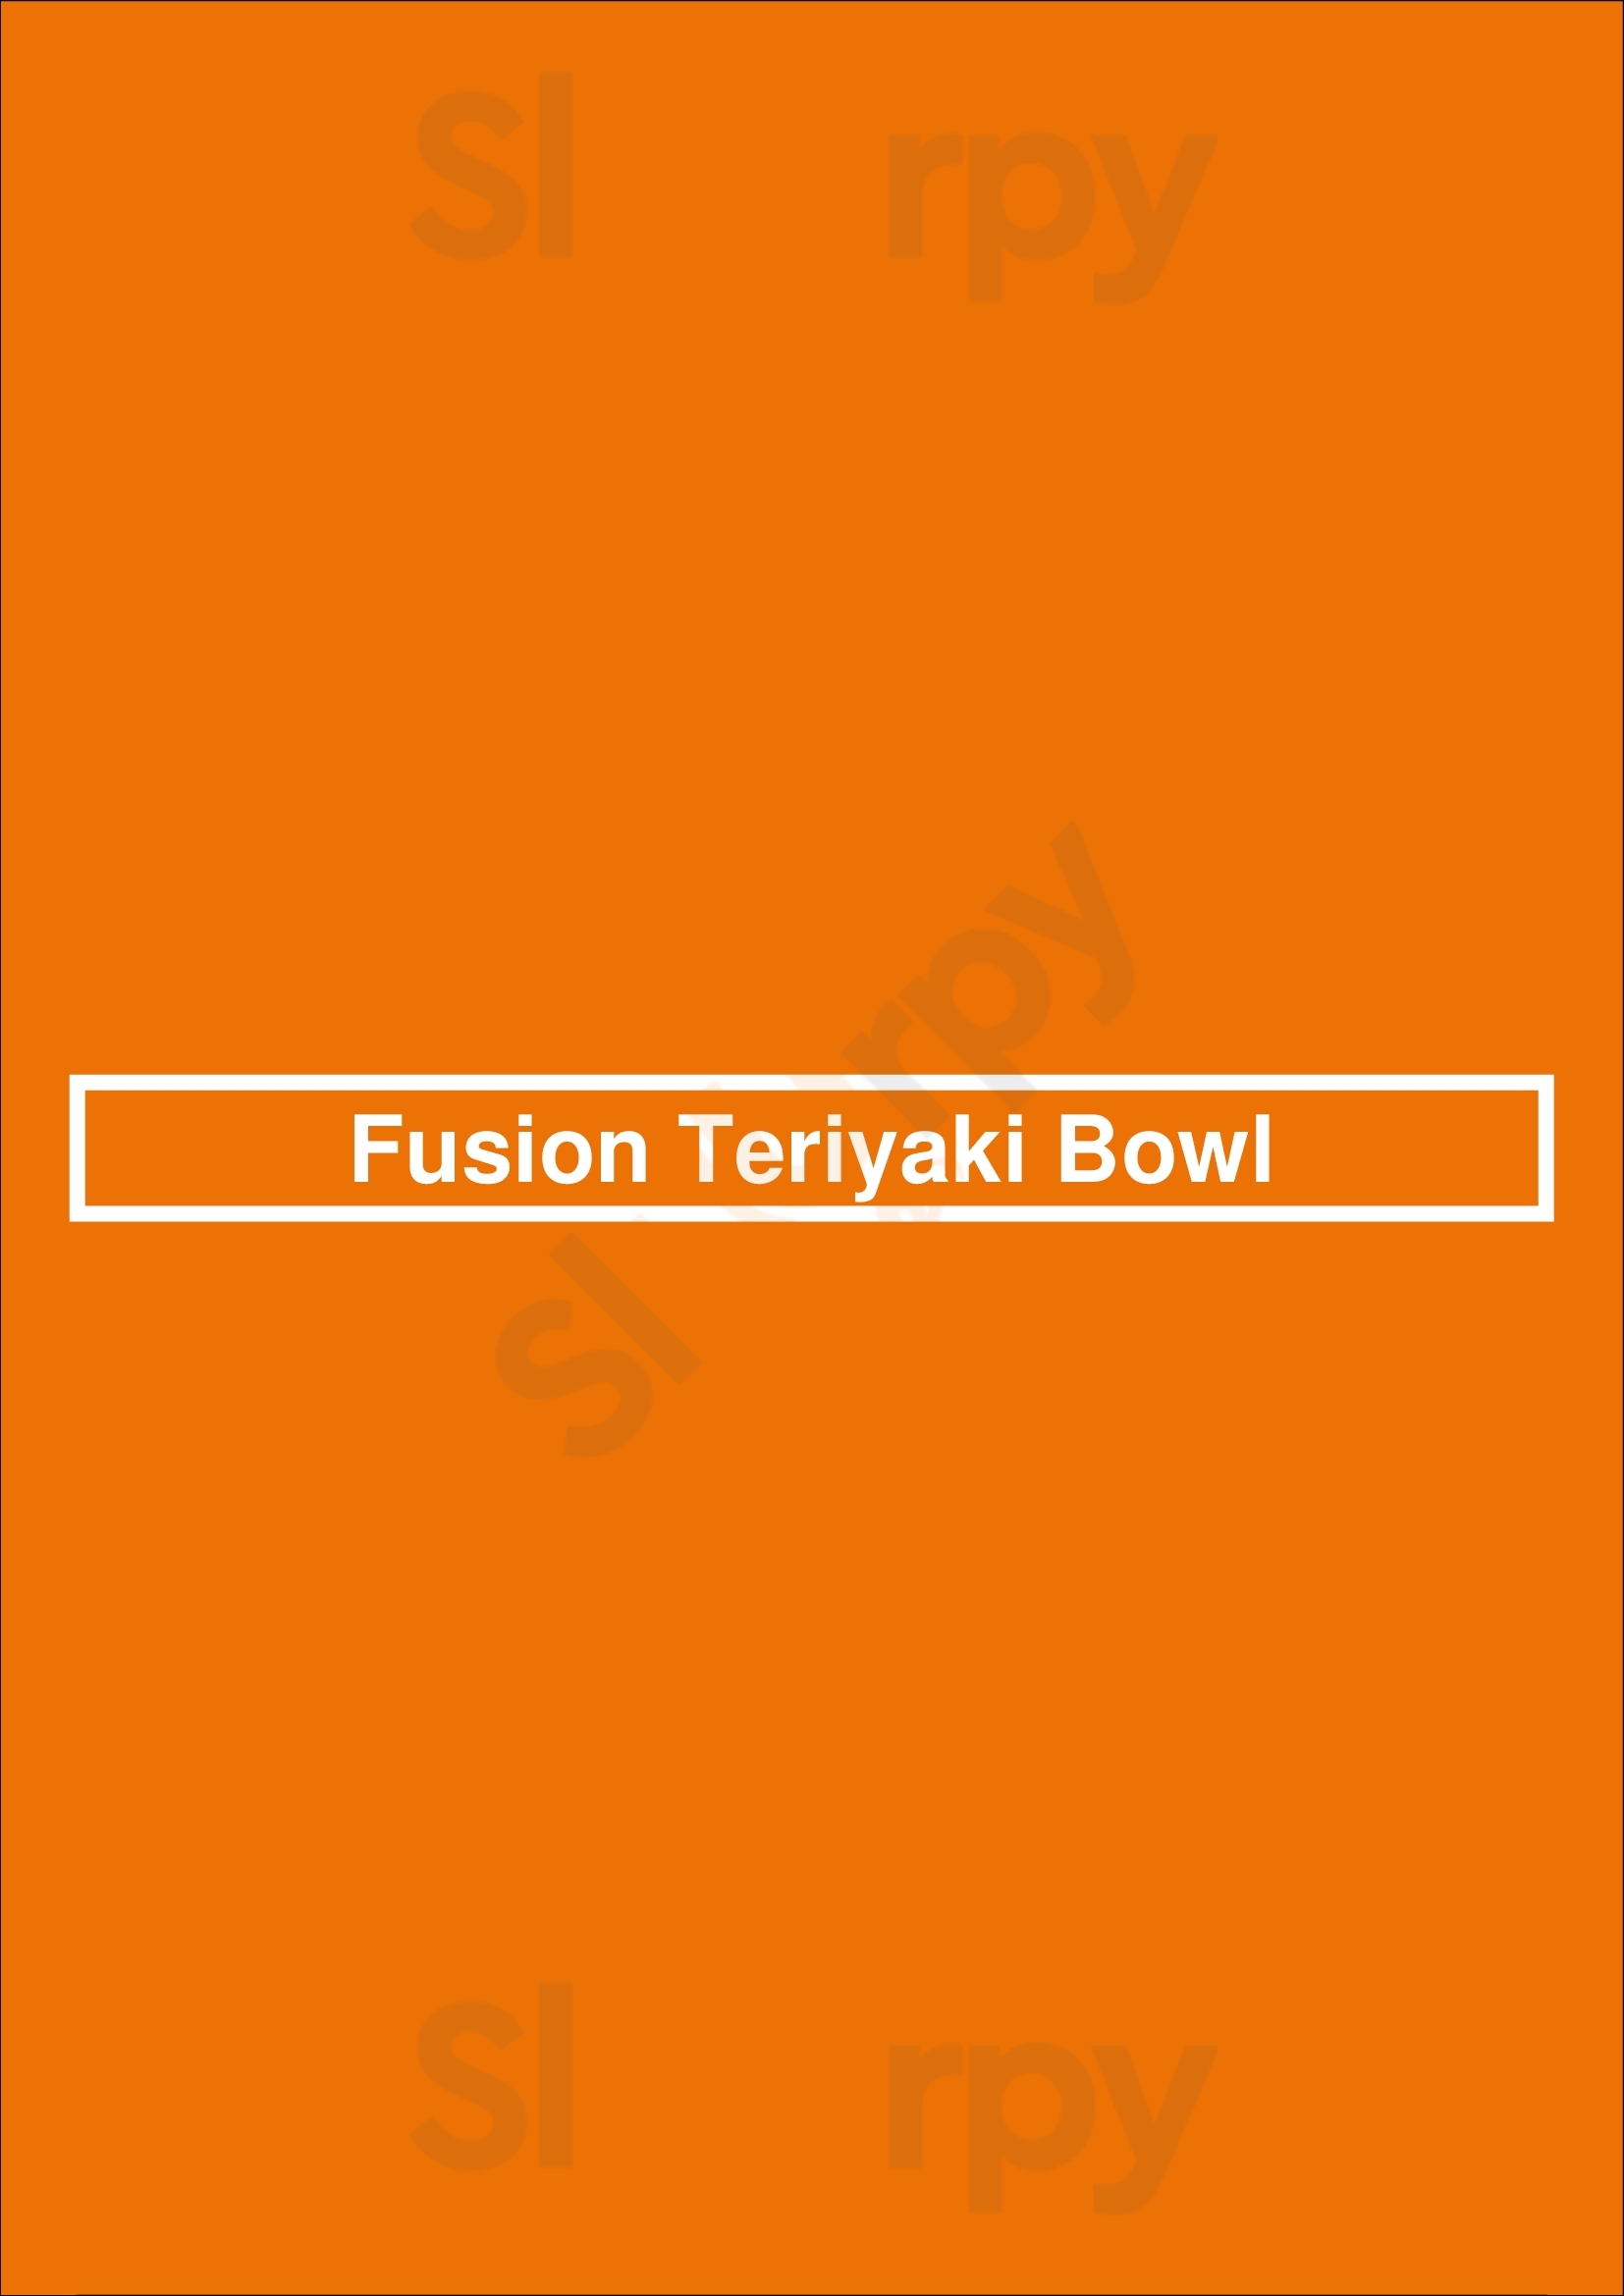 Fusion Teriyaki Bowl Bakersfield Menu - 1